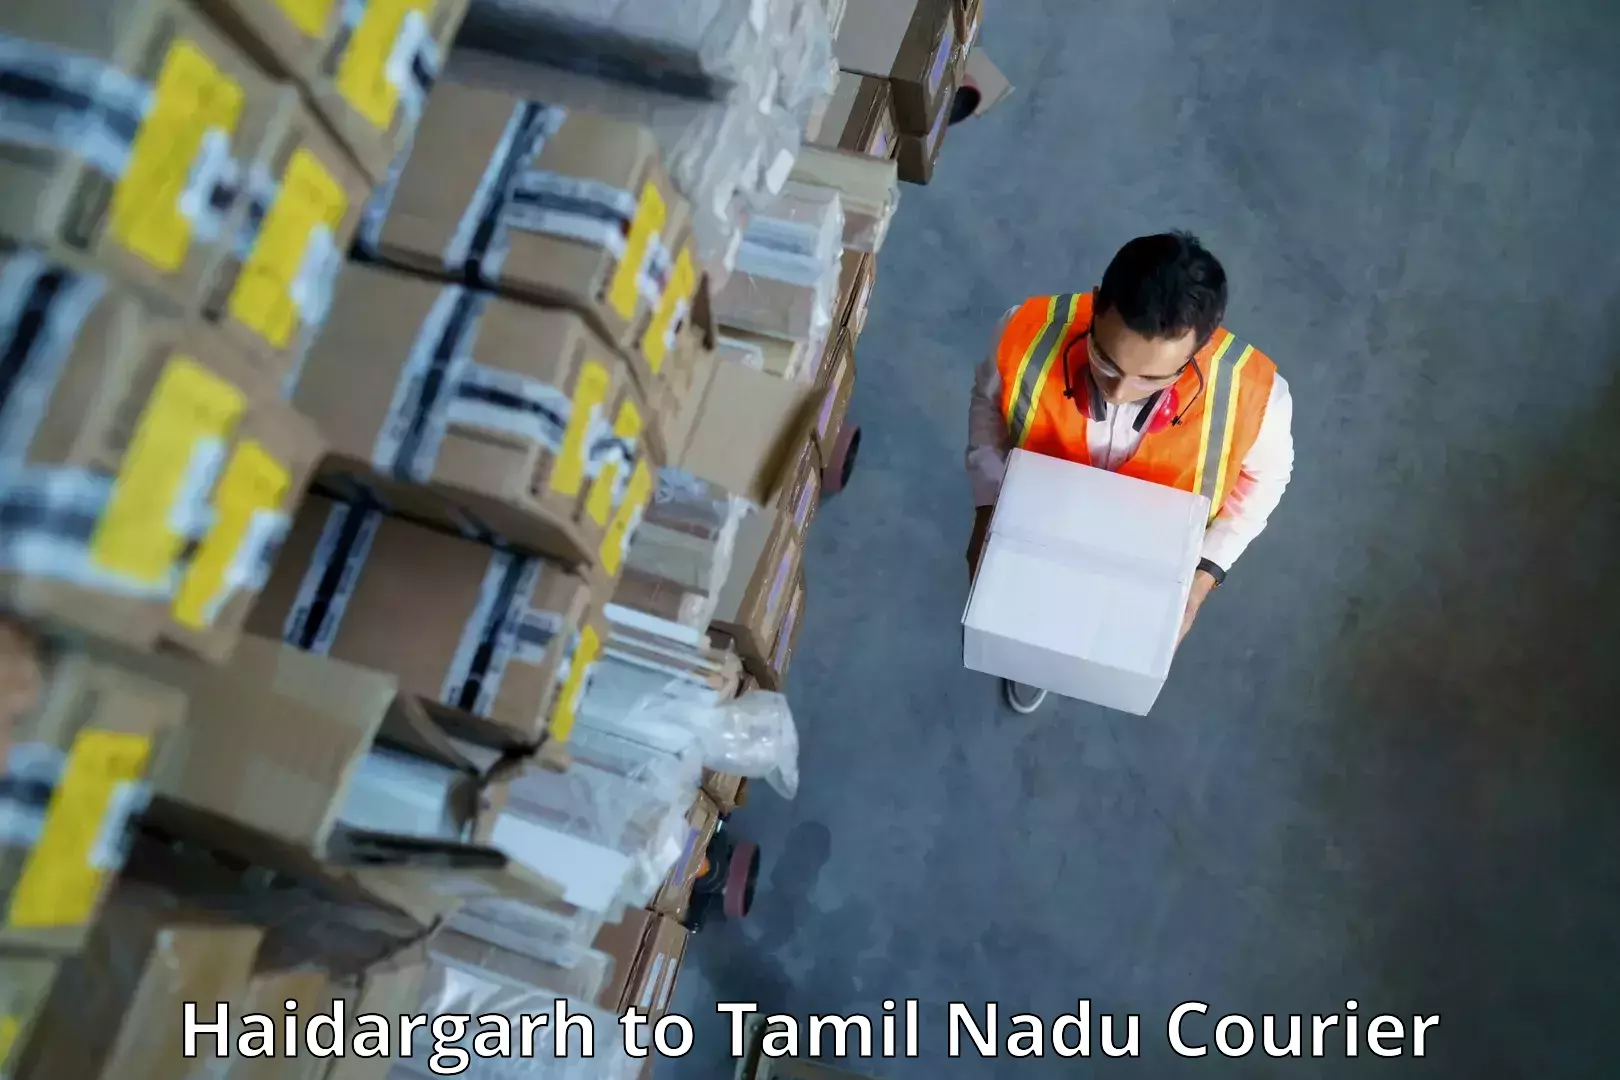 Online courier booking Haidargarh to Tamil Nadu